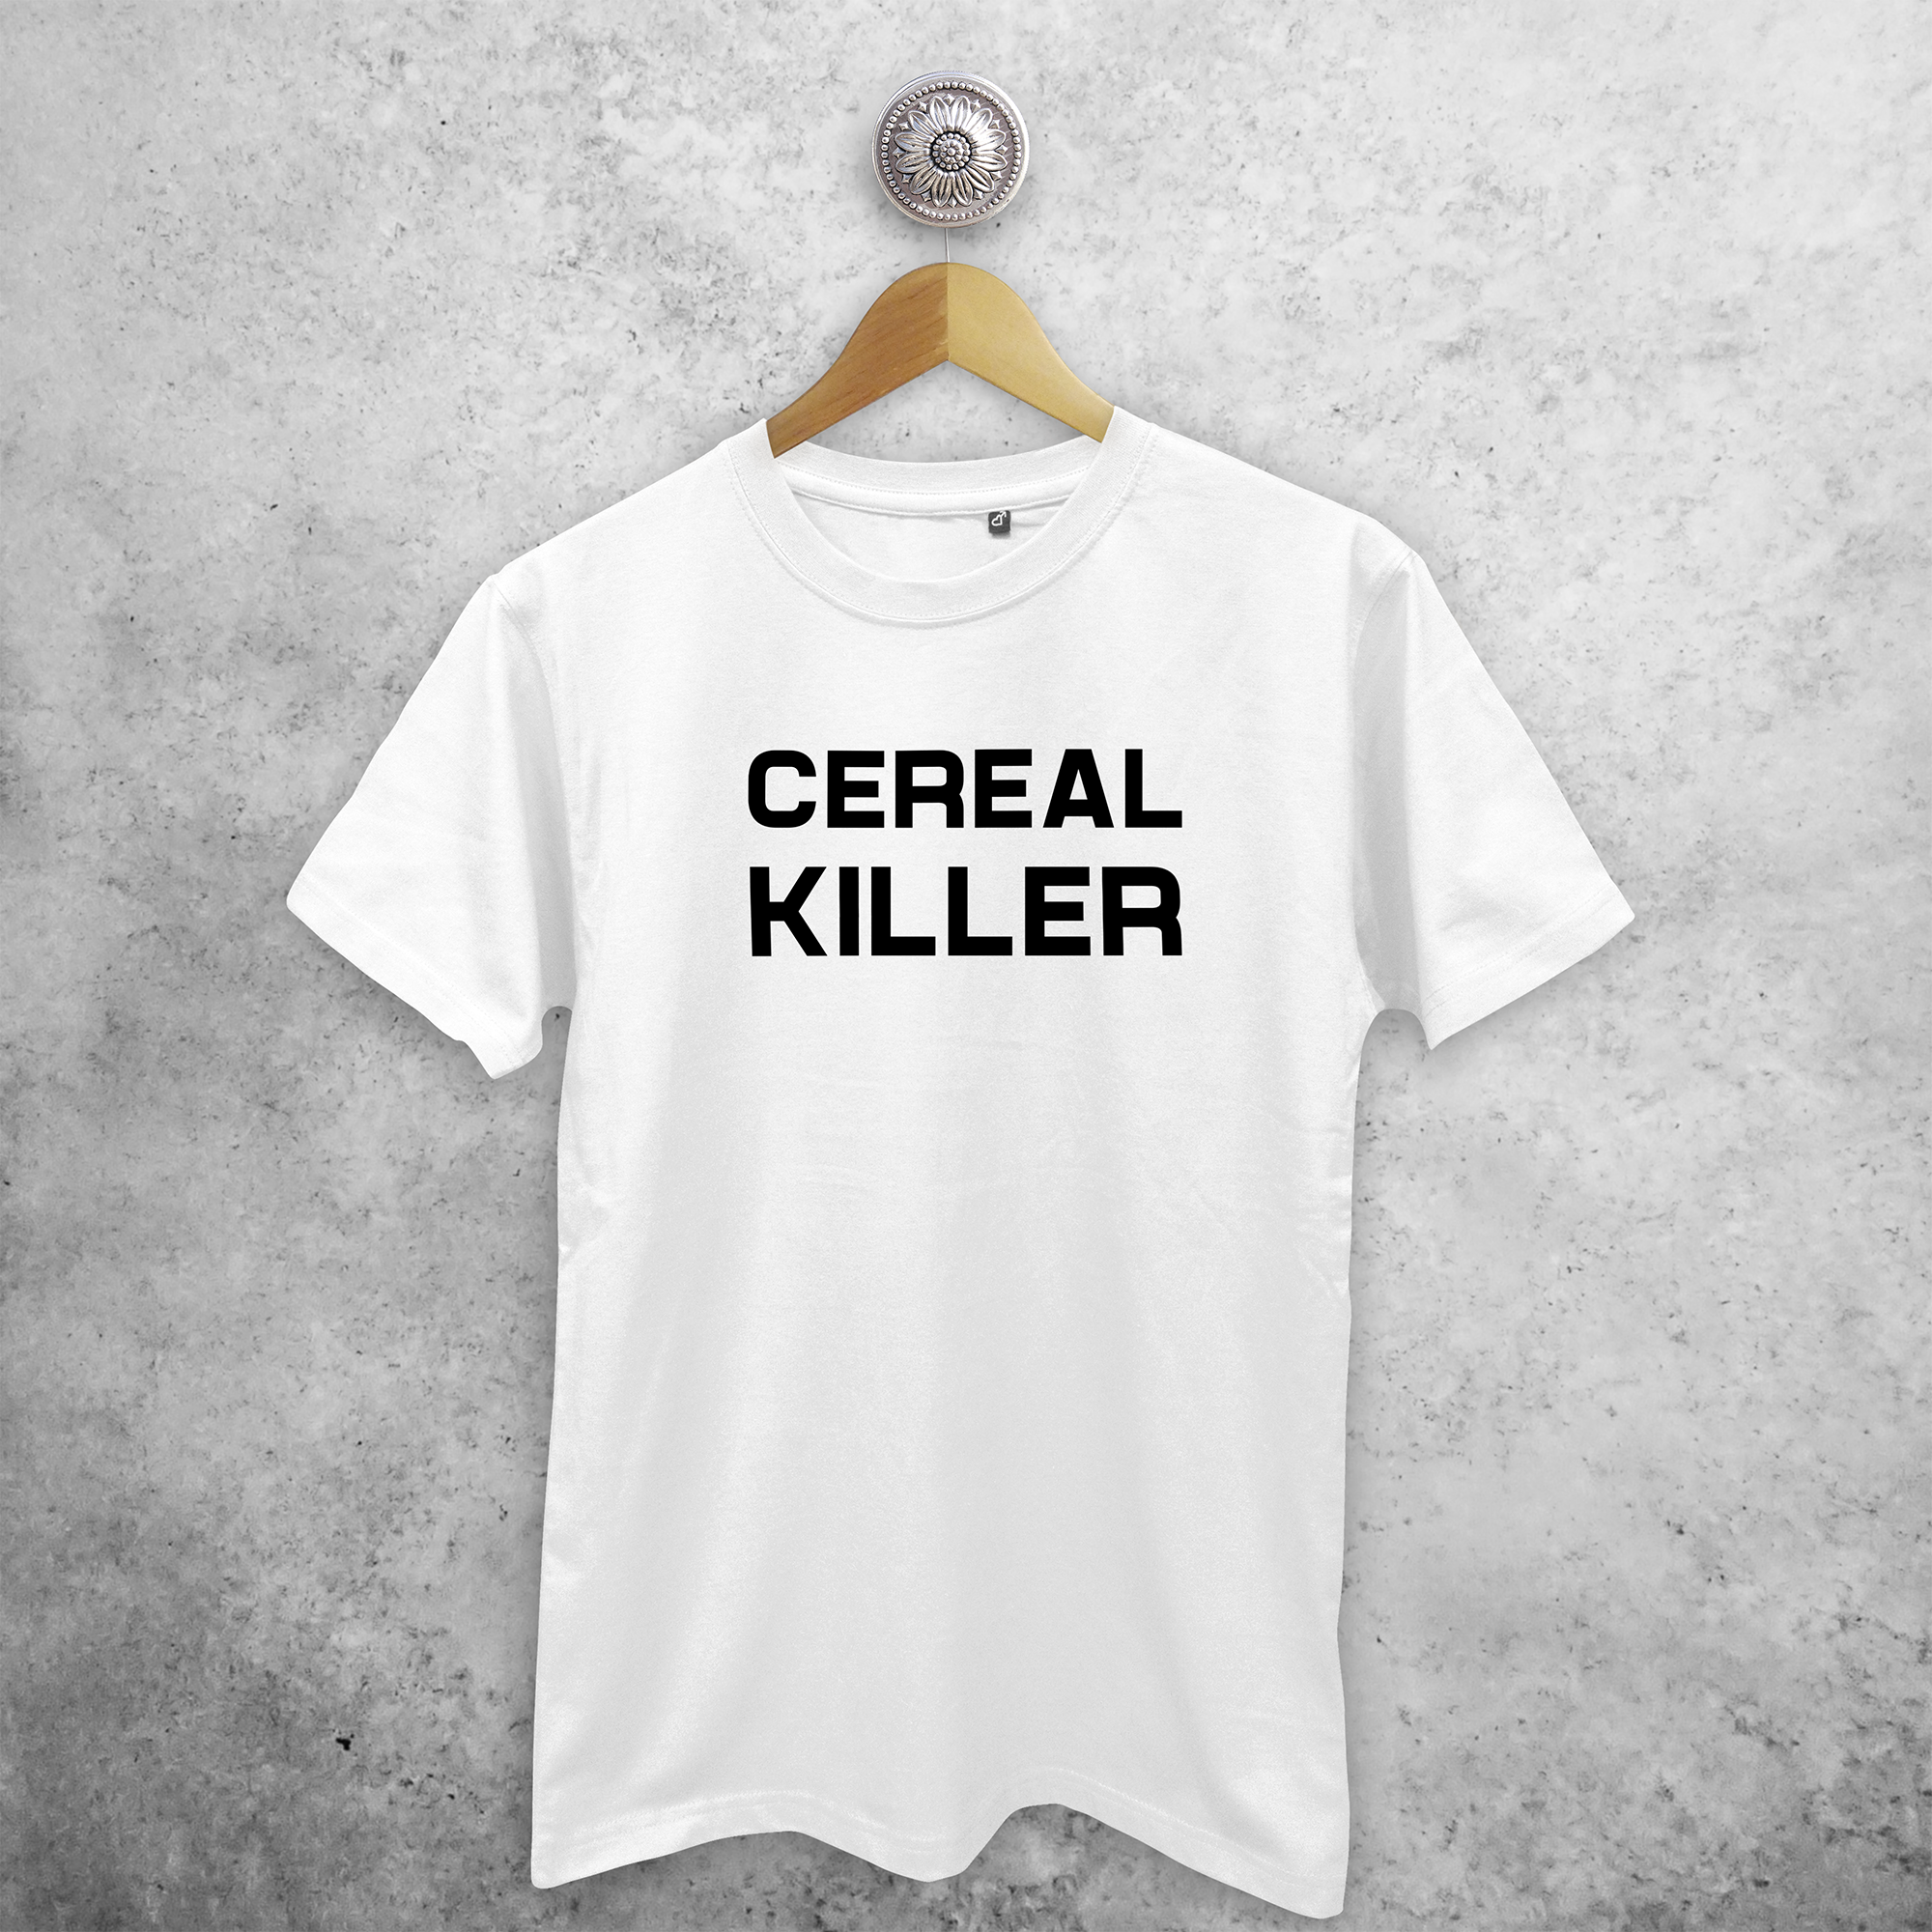 'Cereal killer' adult shirt